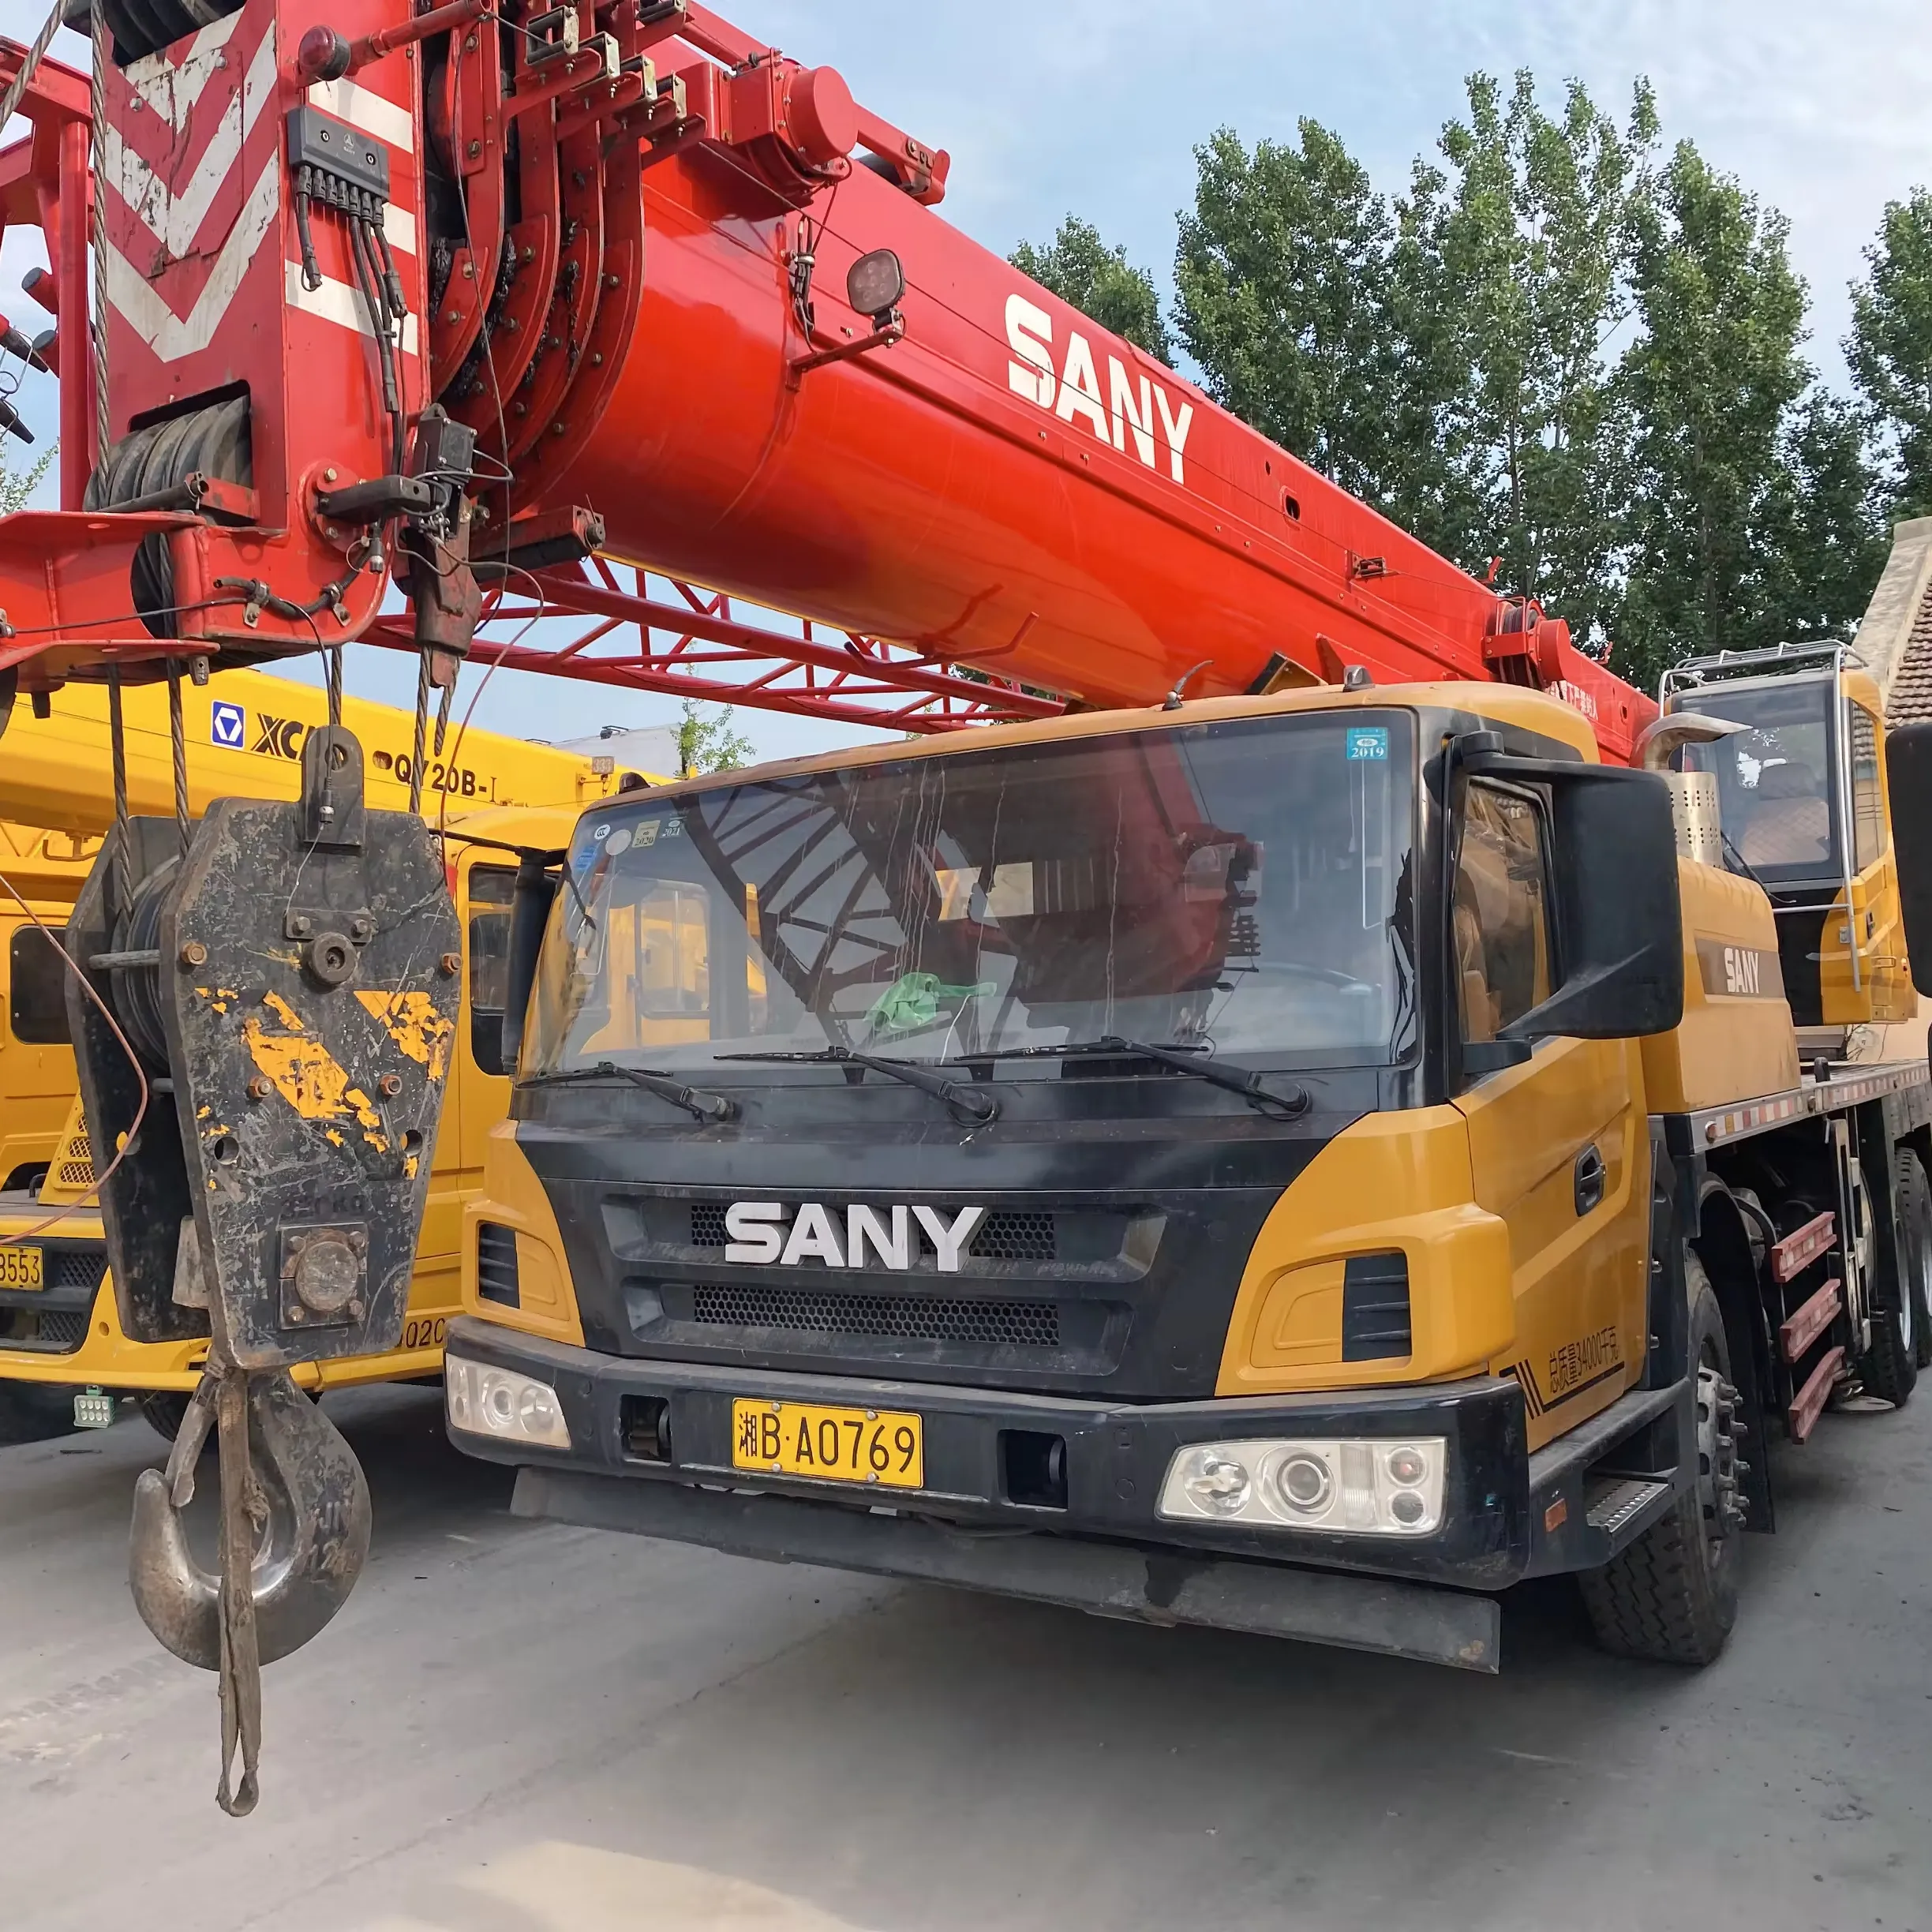 رافعة Sany لرفع السيارات هيدروليكية صغيرة مستعملة STC250 بحمولة 25 طنًا للشاحنات في حالةها الأصلية رافعة شاحنات مستعملة للبيع